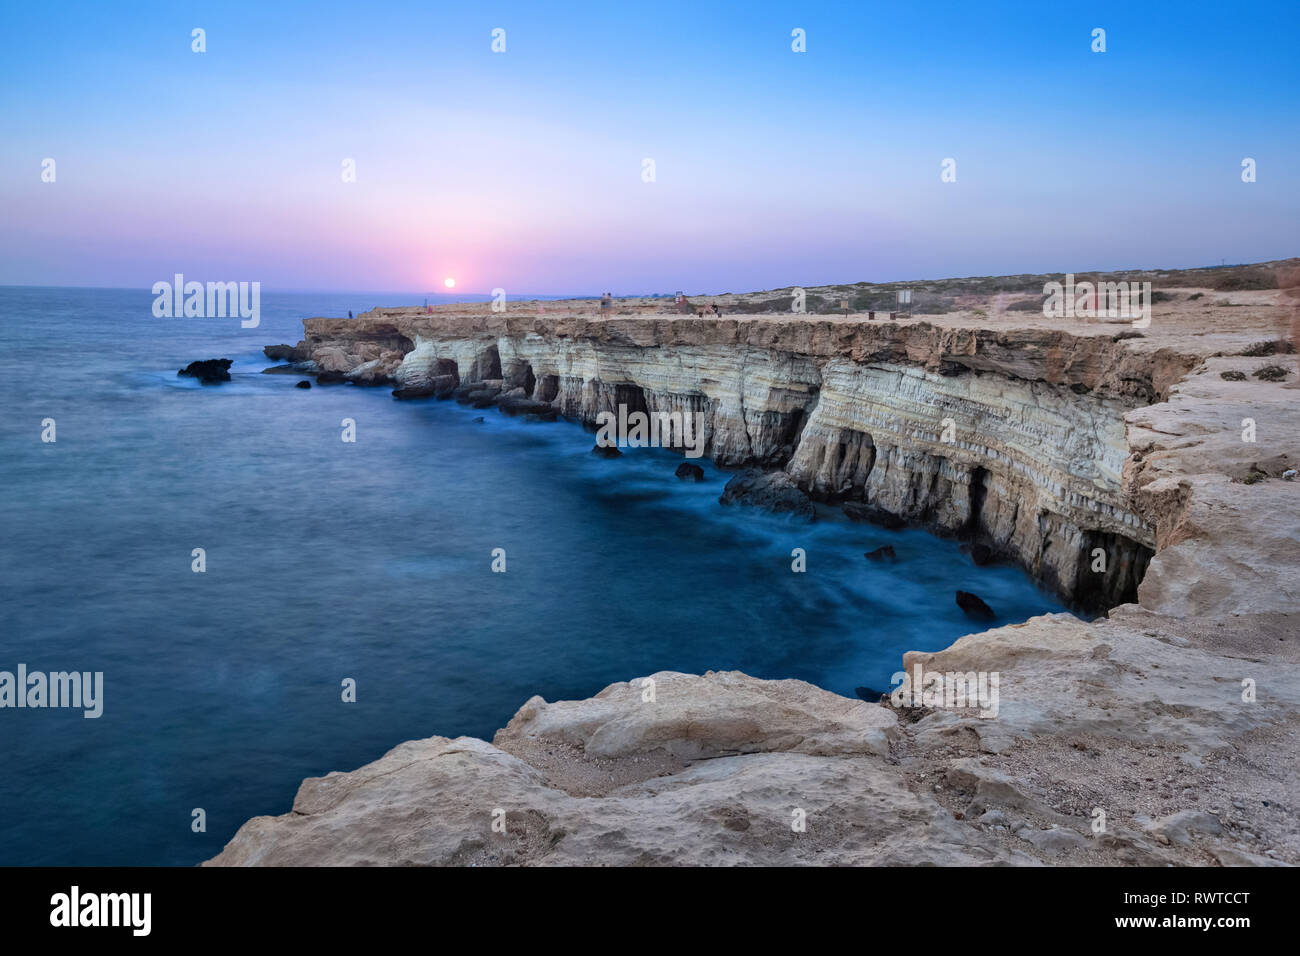 Vista del acantilado con cuevas del mar al atardecer en Cape Greco cerca de Ayia Napa, Chipre (imagen HDR) Foto de stock